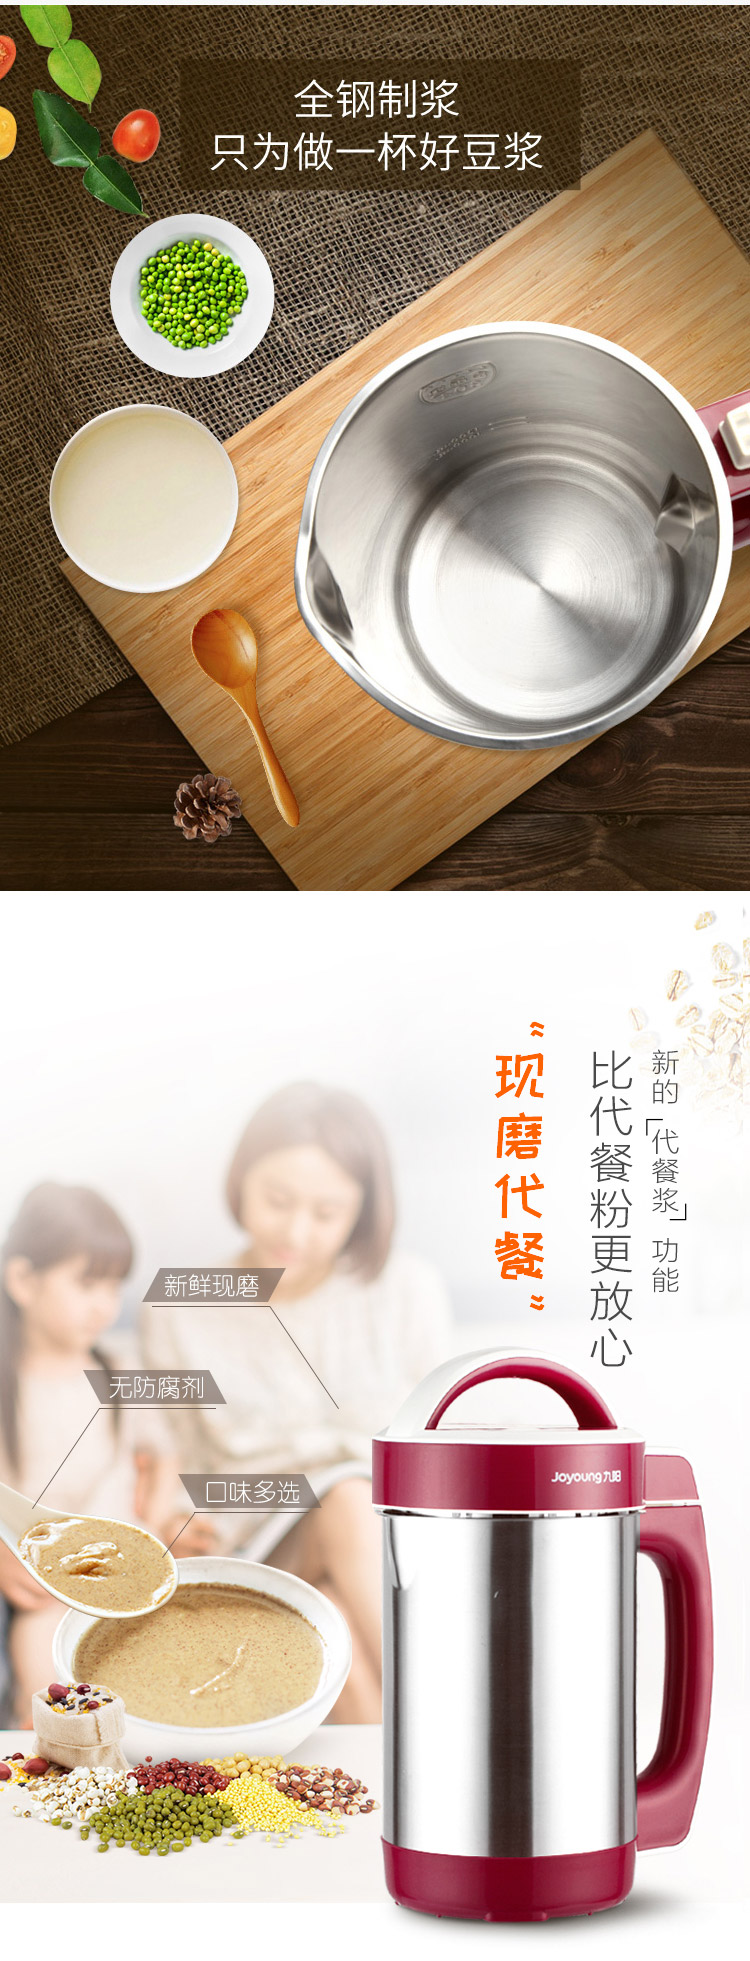 九阳/Joyoung 豆浆机加热家用全自动多功能煮智能免过滤小型官方旗舰店正品